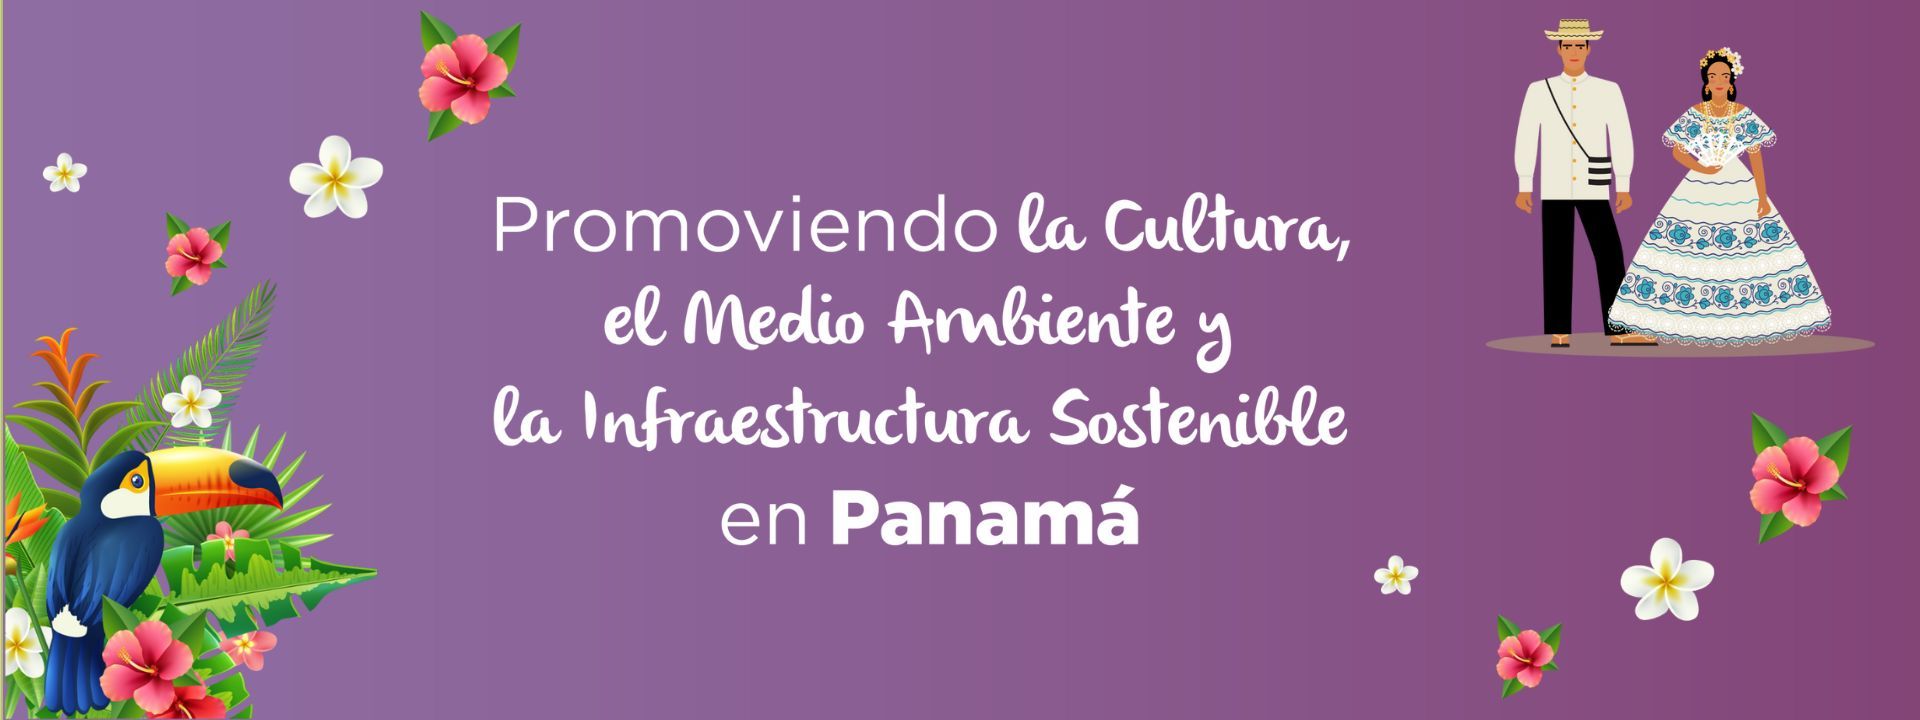 Promoviendo la Cultura, el Medio Ambiente y la Infraestructura Sostenible en Panamá